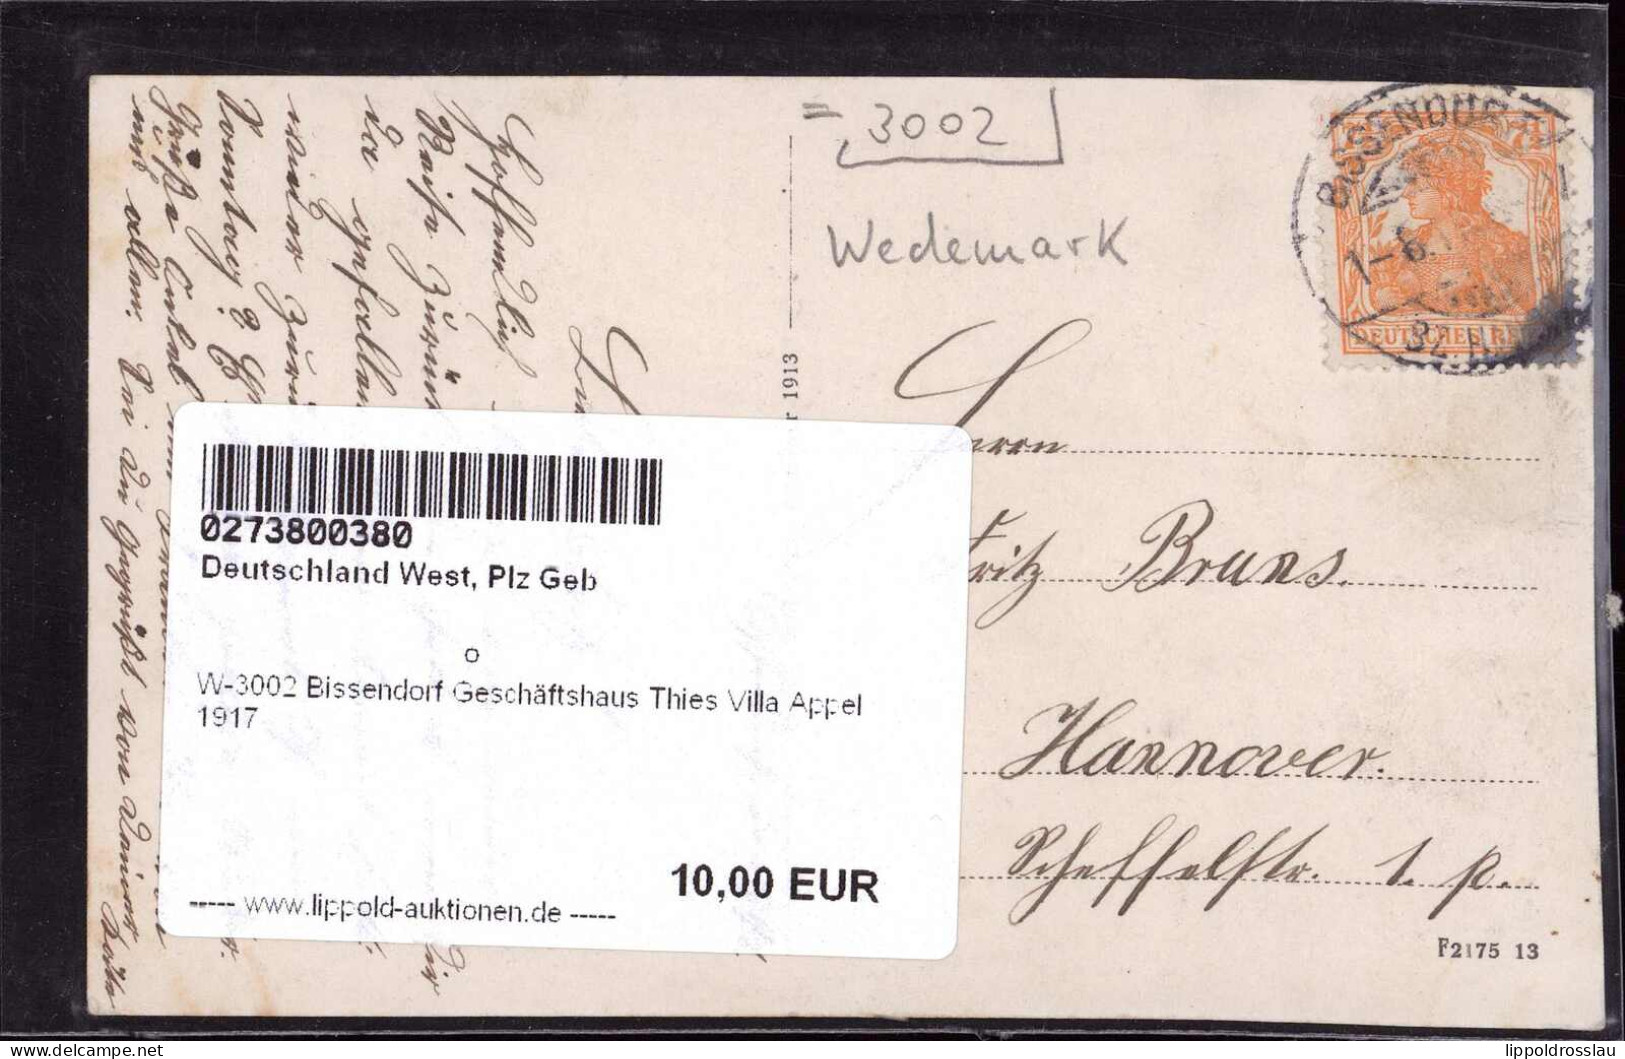 Gest. W-3002 Bissendorf Geschäftshaus Thies Villa Appel 1917 - Hannover